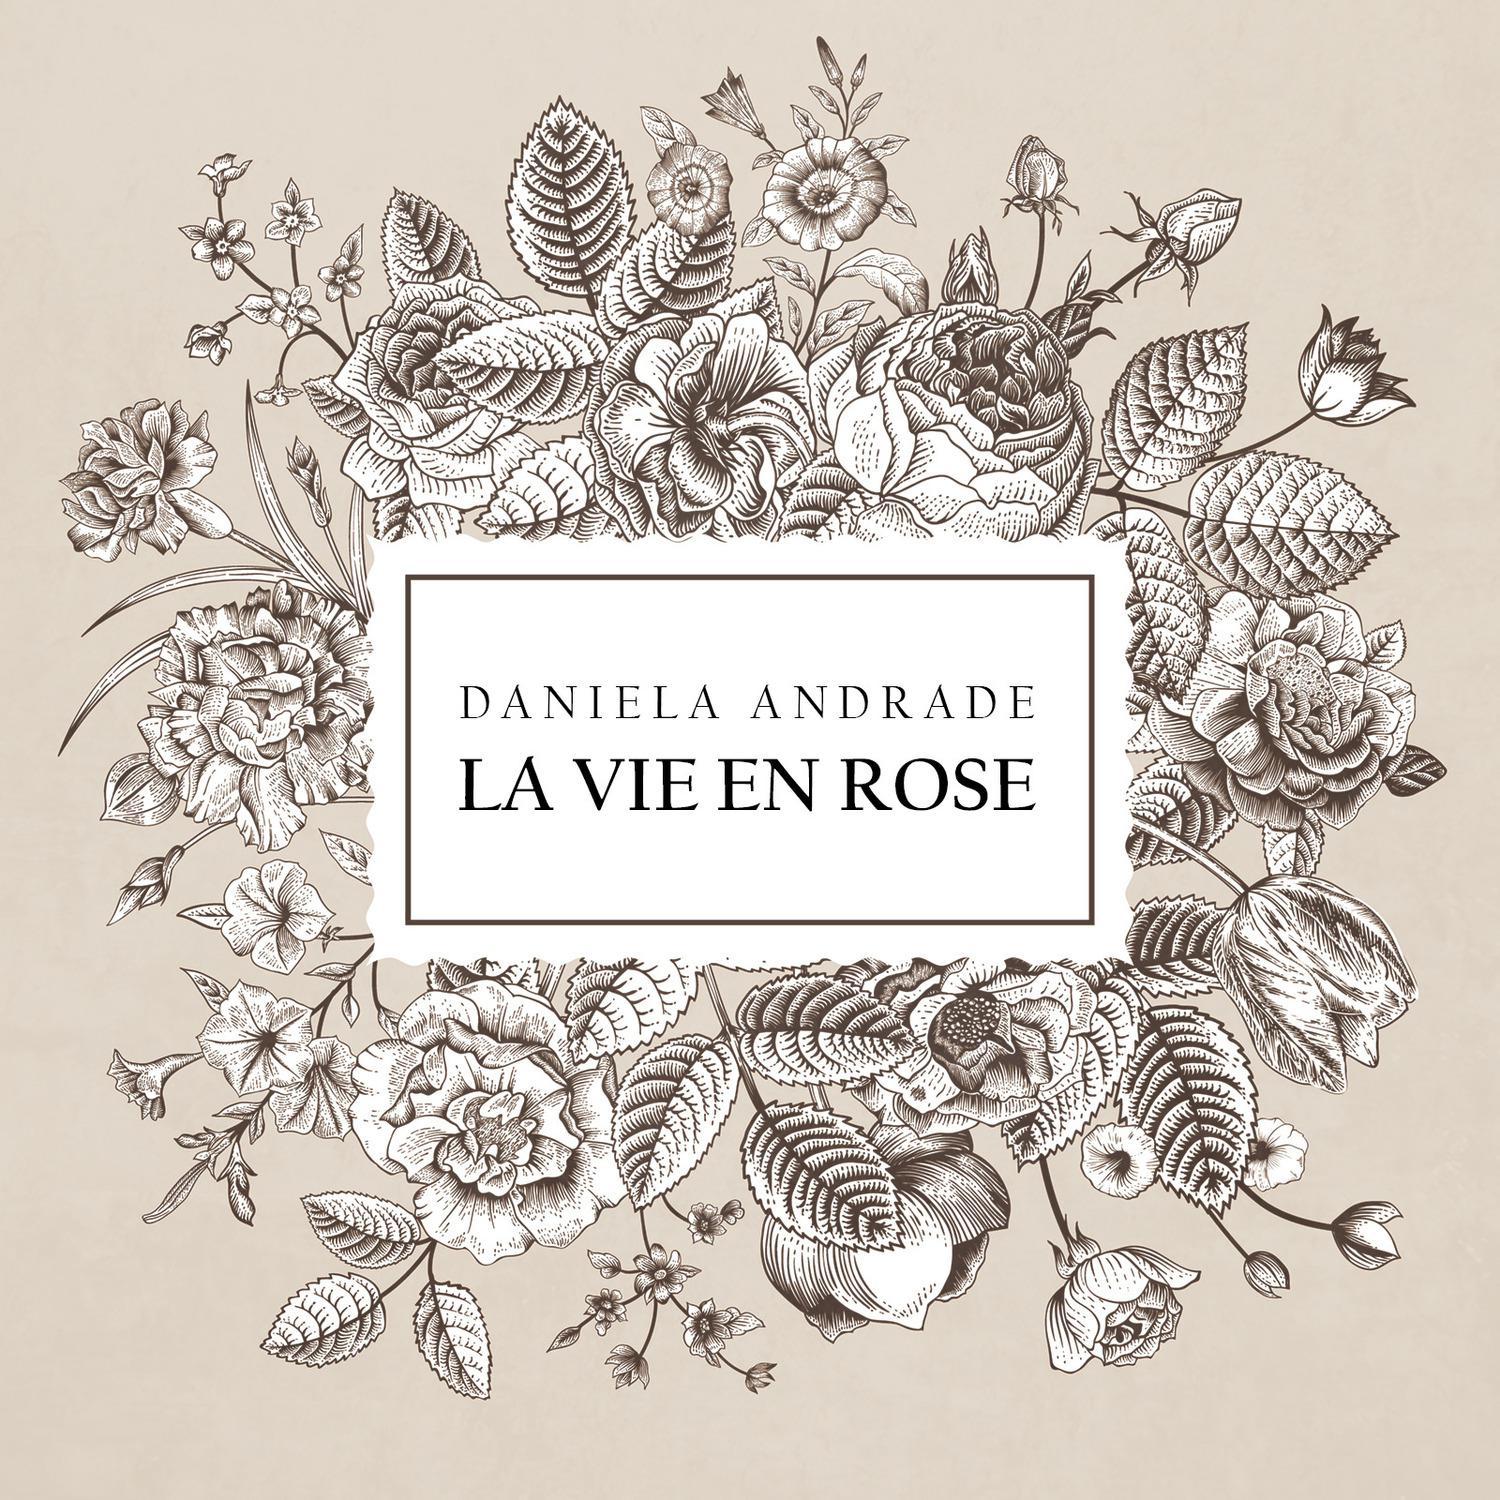 La Vie En Rose歌词 歌手Daniela Andrade-专辑La Vie En Rose-单曲《La Vie En Rose》LRC歌词下载